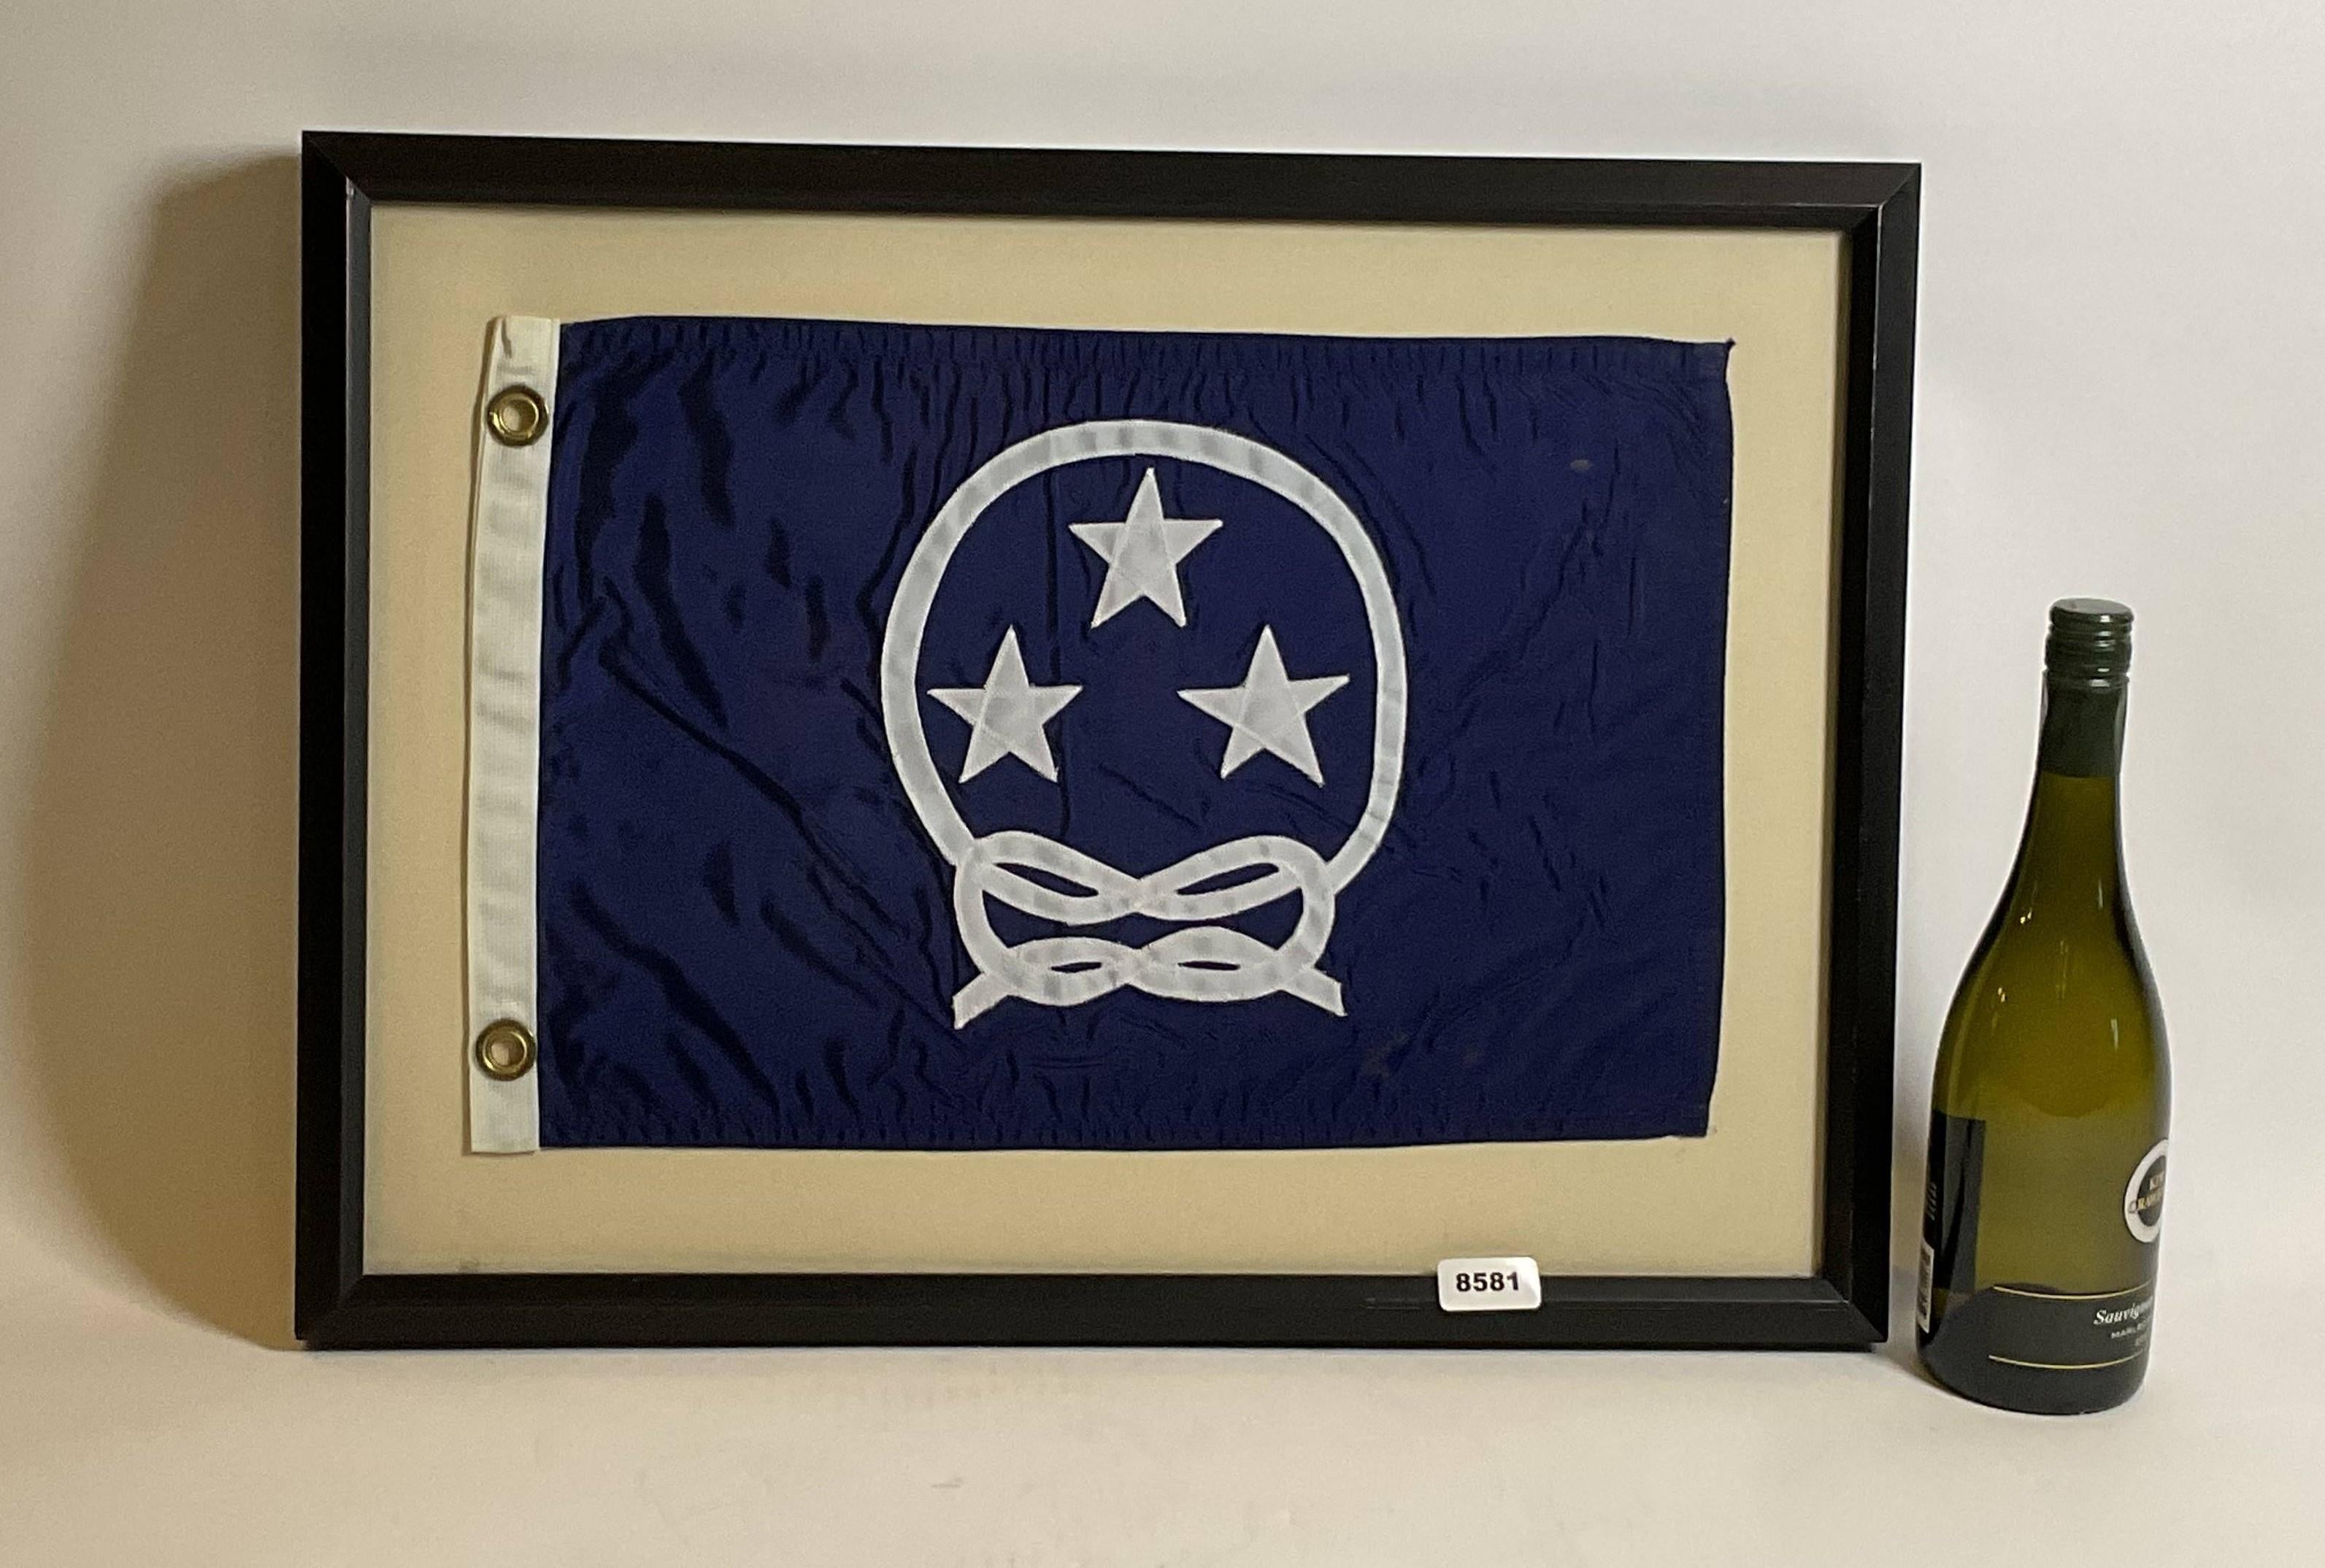 Nautische Bootsflagge im Rahmen. Die Flagge der Kommodore des Yachtclubs zeigt drei Sterne, die von einem geknoteten Seil umgeben sind. Weißer Flaschenzug mit Messingösen. Eingefasst in einen individuellen Rahmen.

Gewicht: 5 lbs
Gesamtabmessungen: